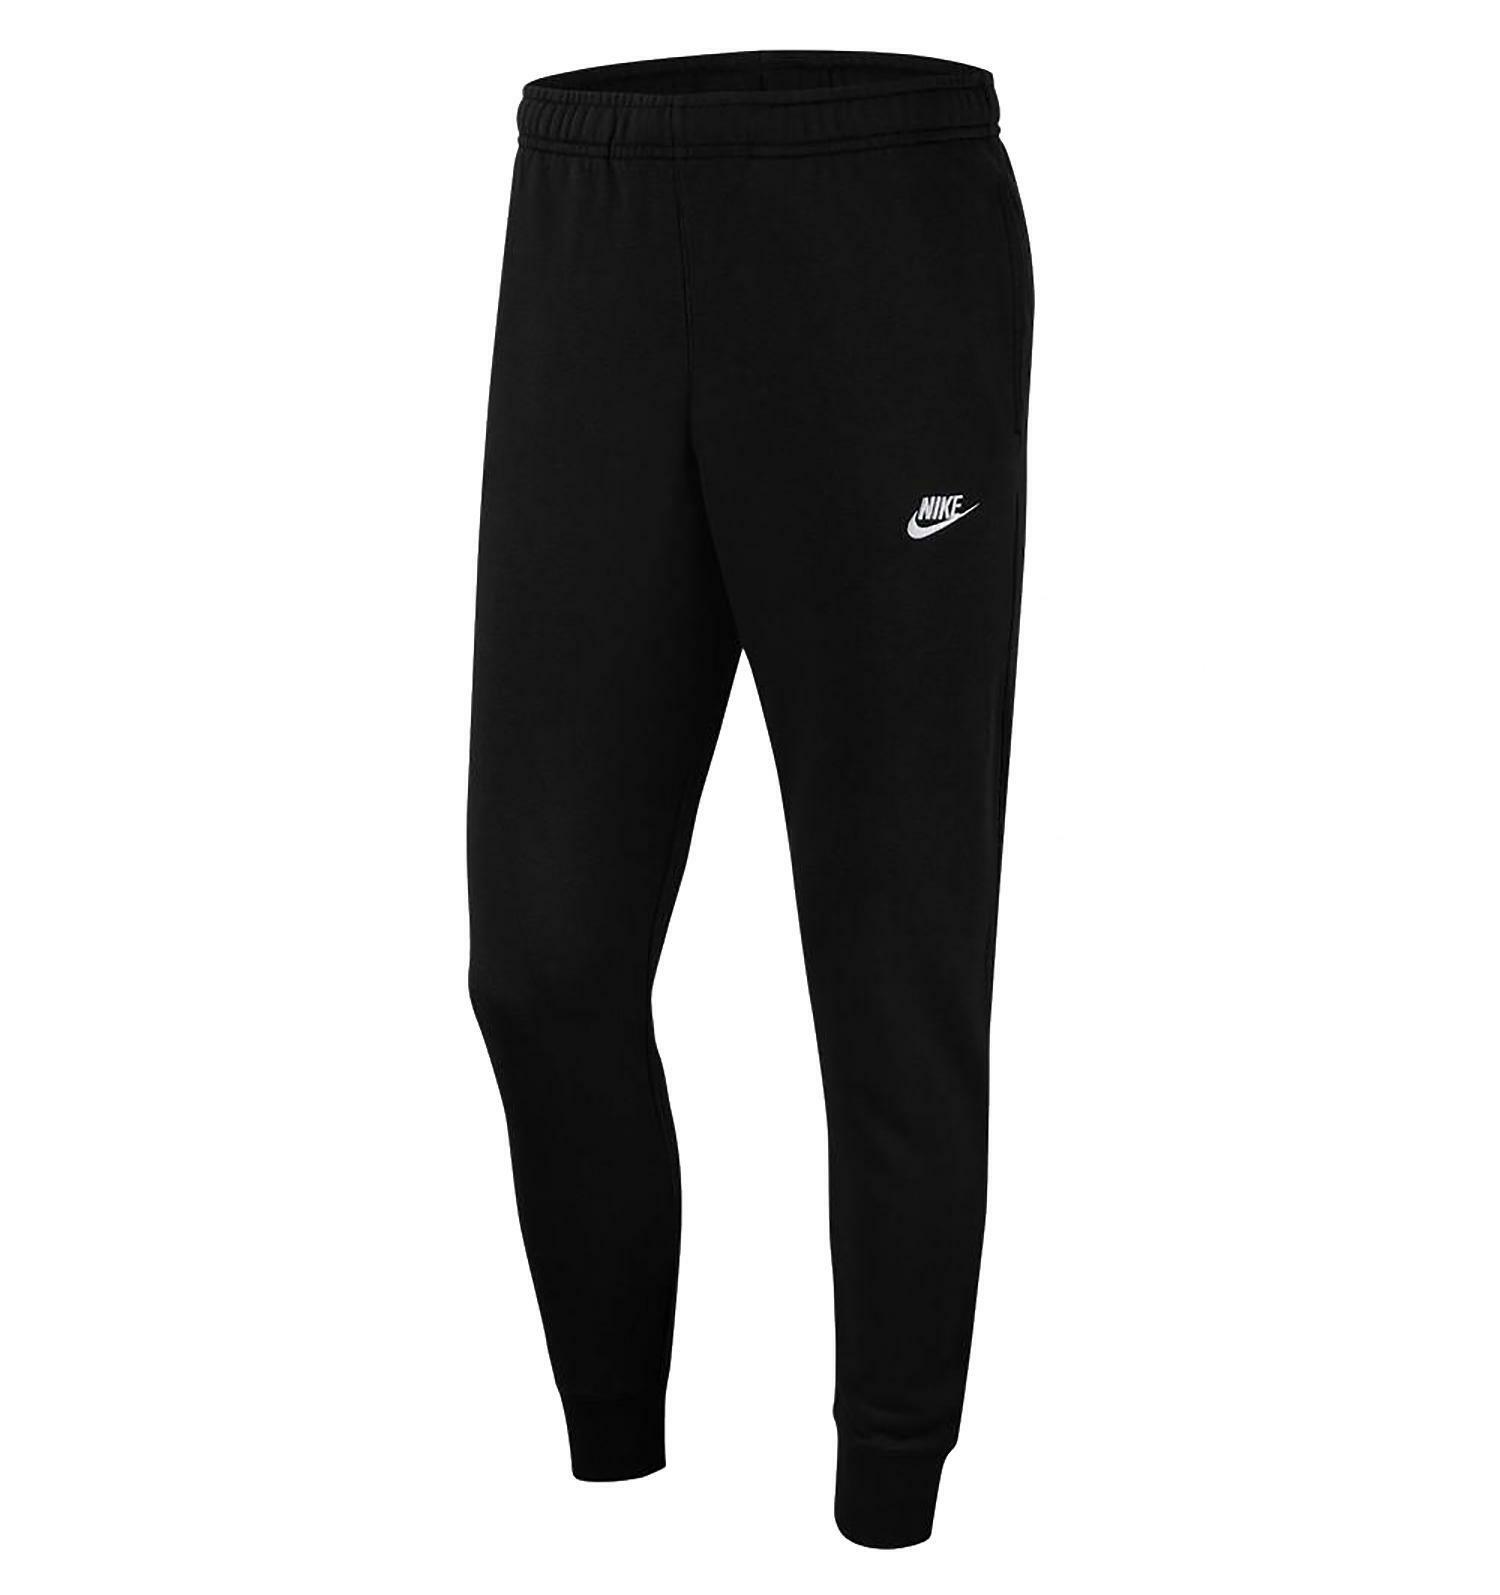 Nike pantaloni uomo neri bv2679010